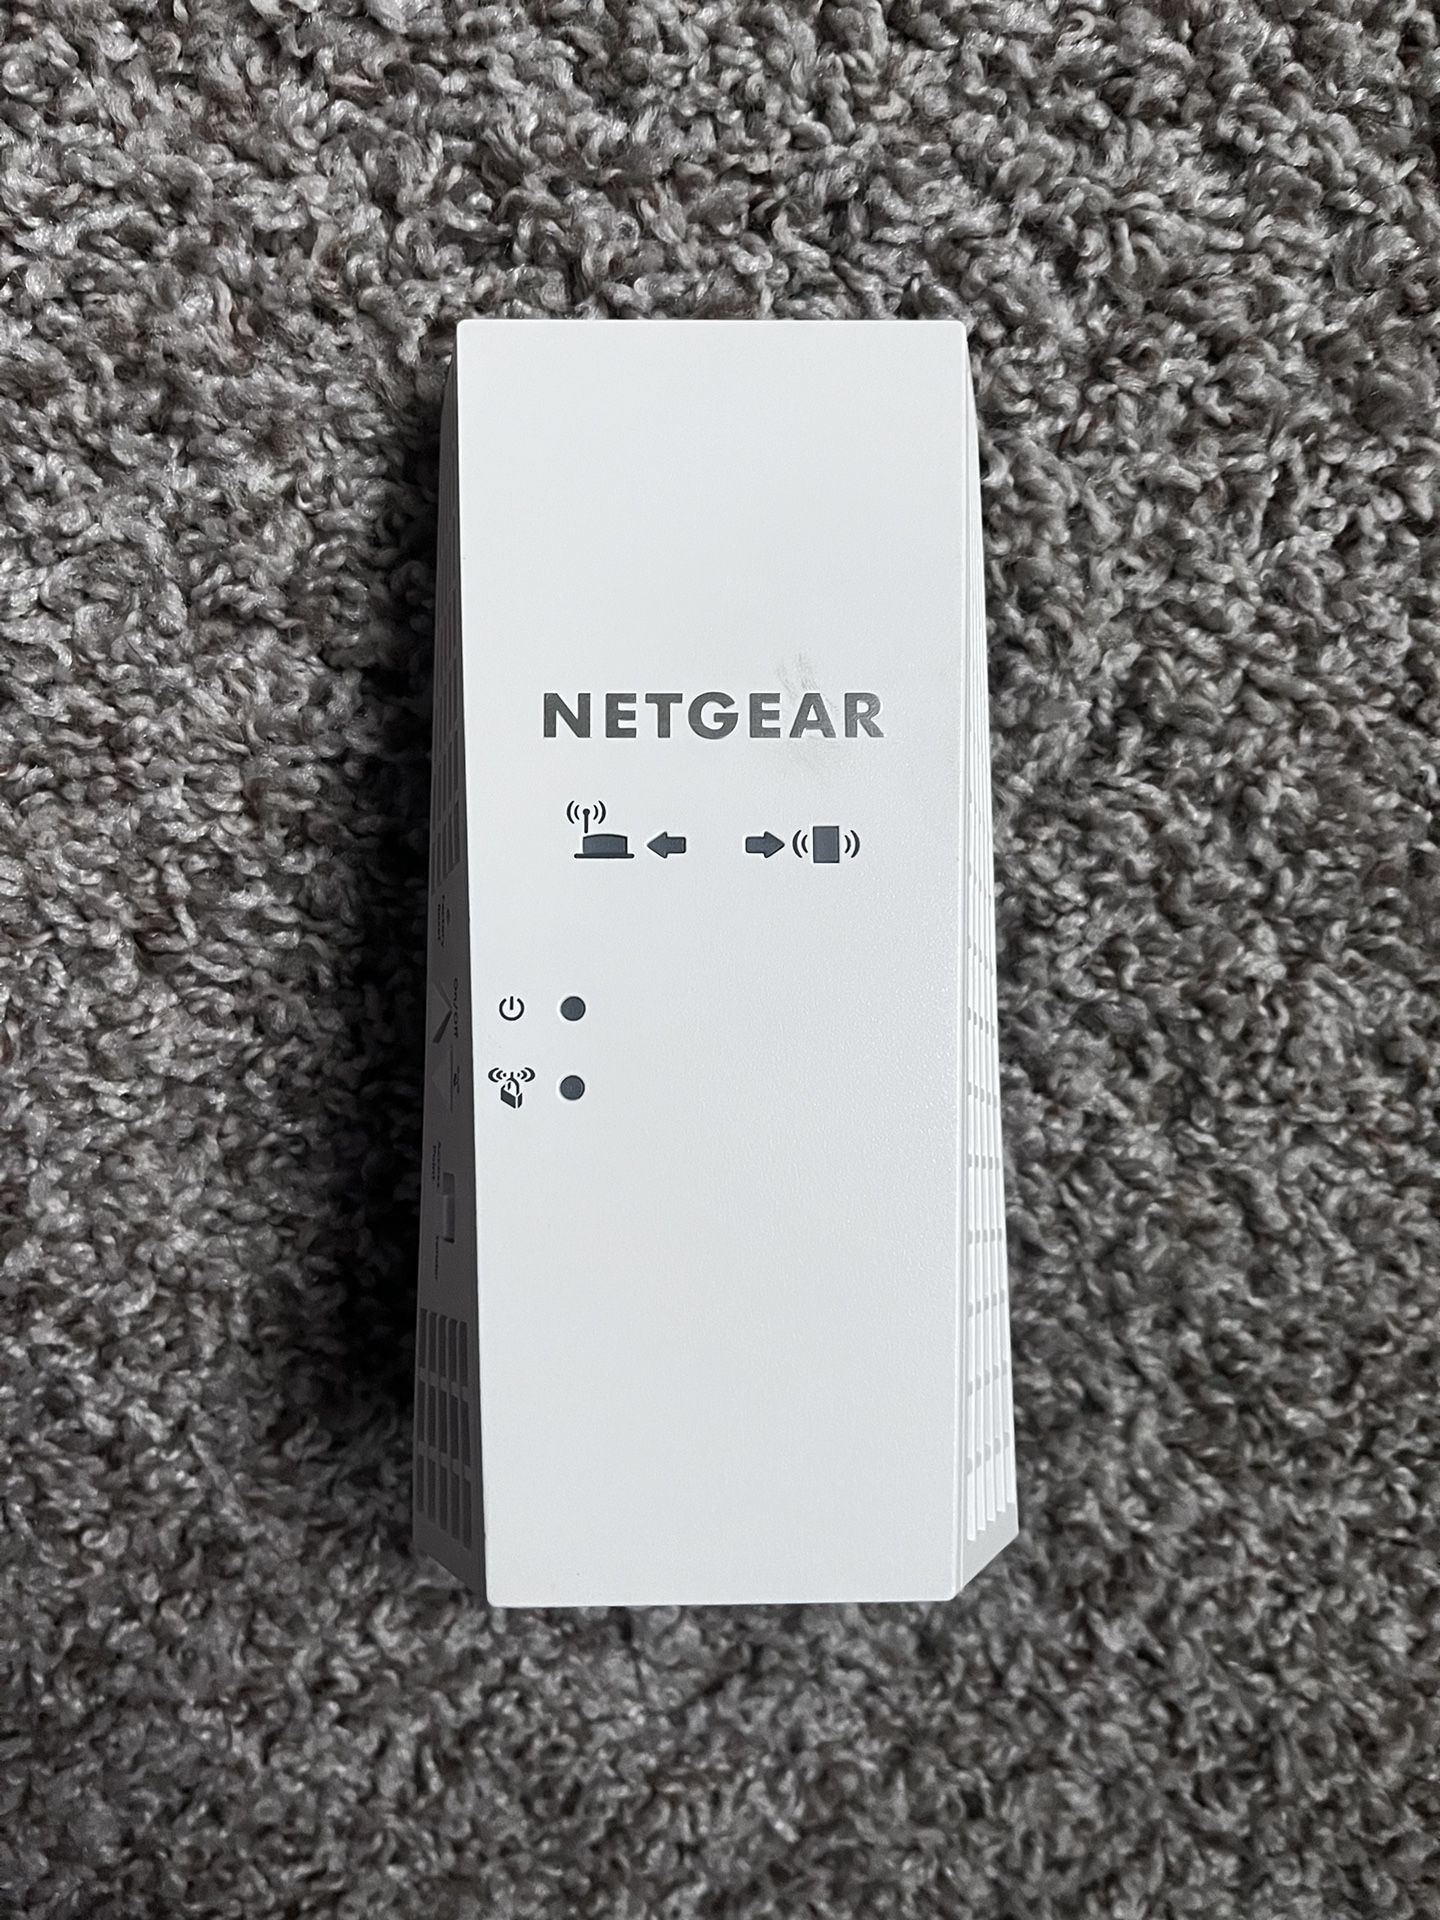 NETGEAR - WIFI - Extender